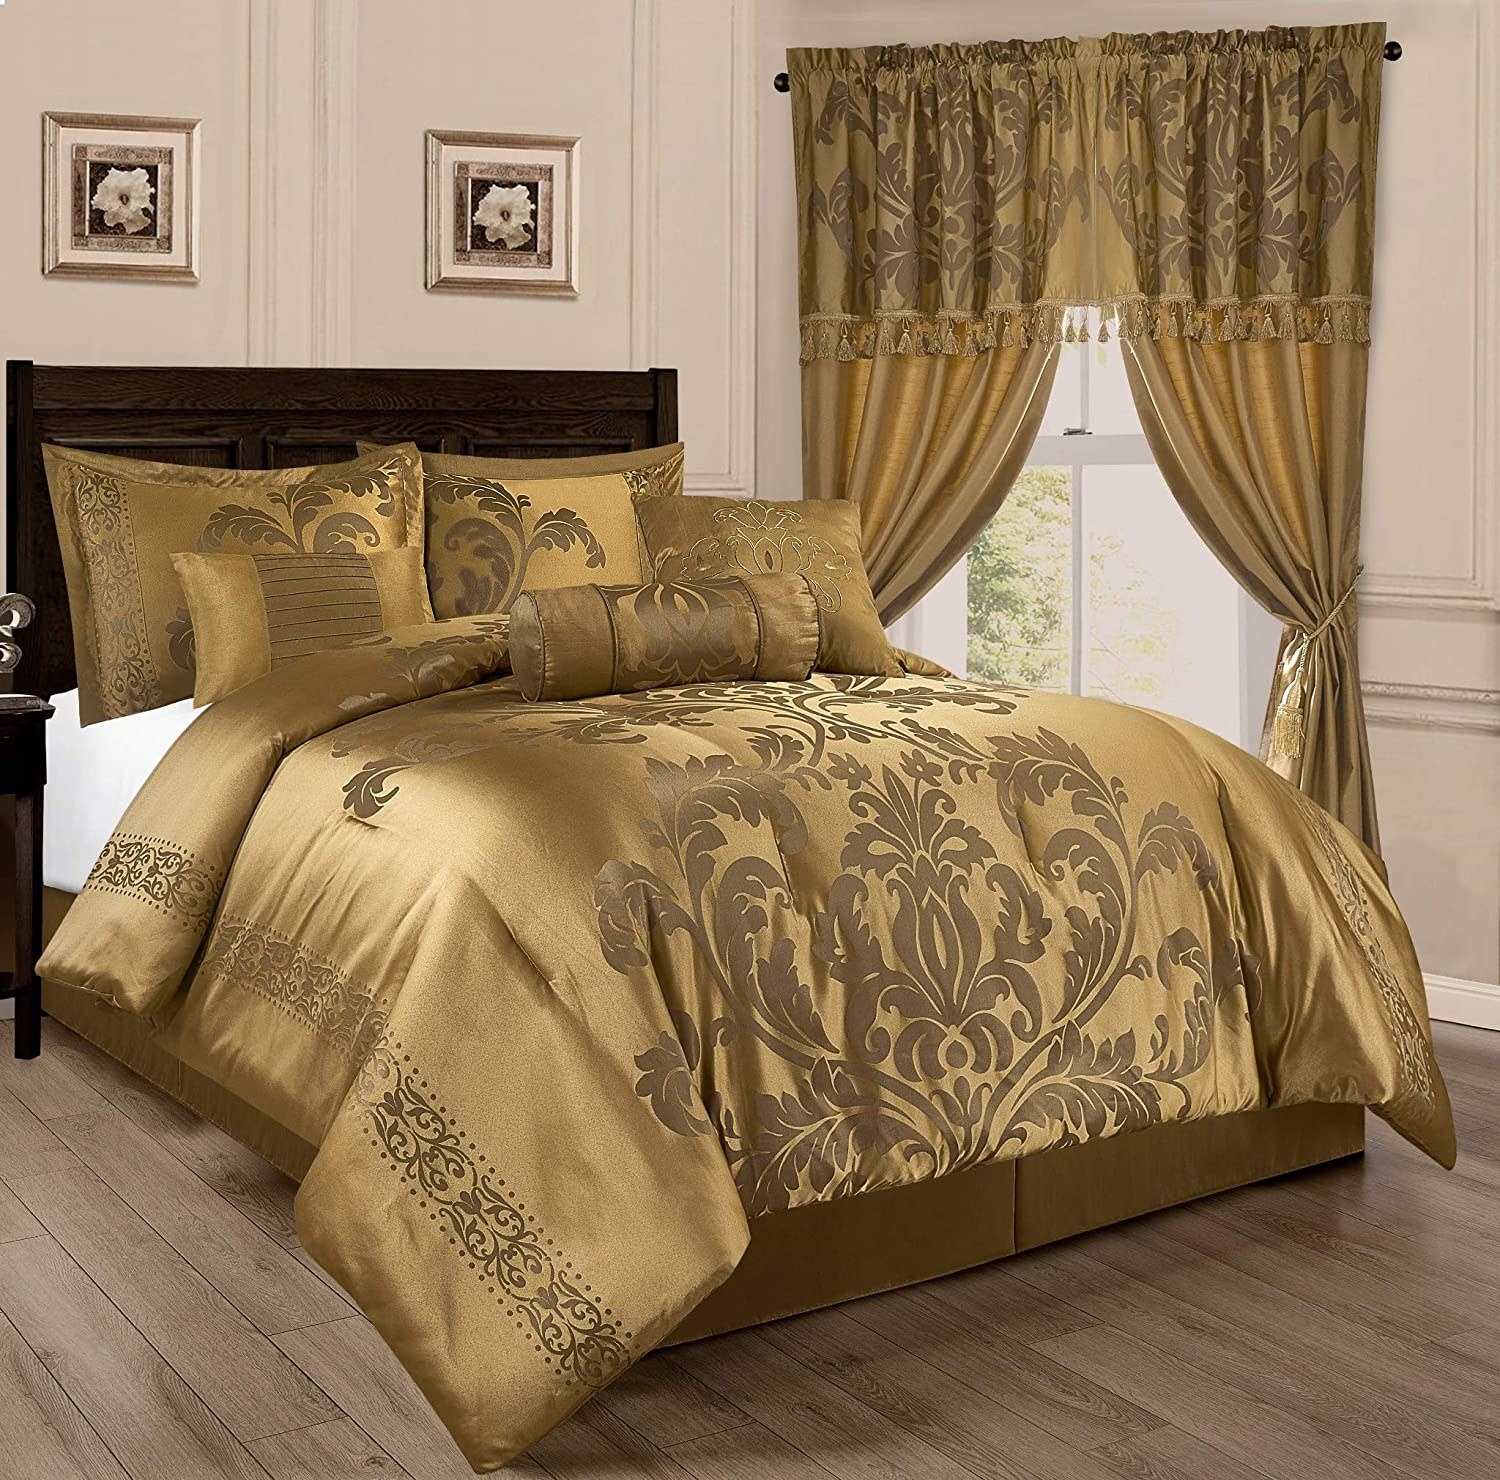 gold floral comforter set on mattress in bedroom